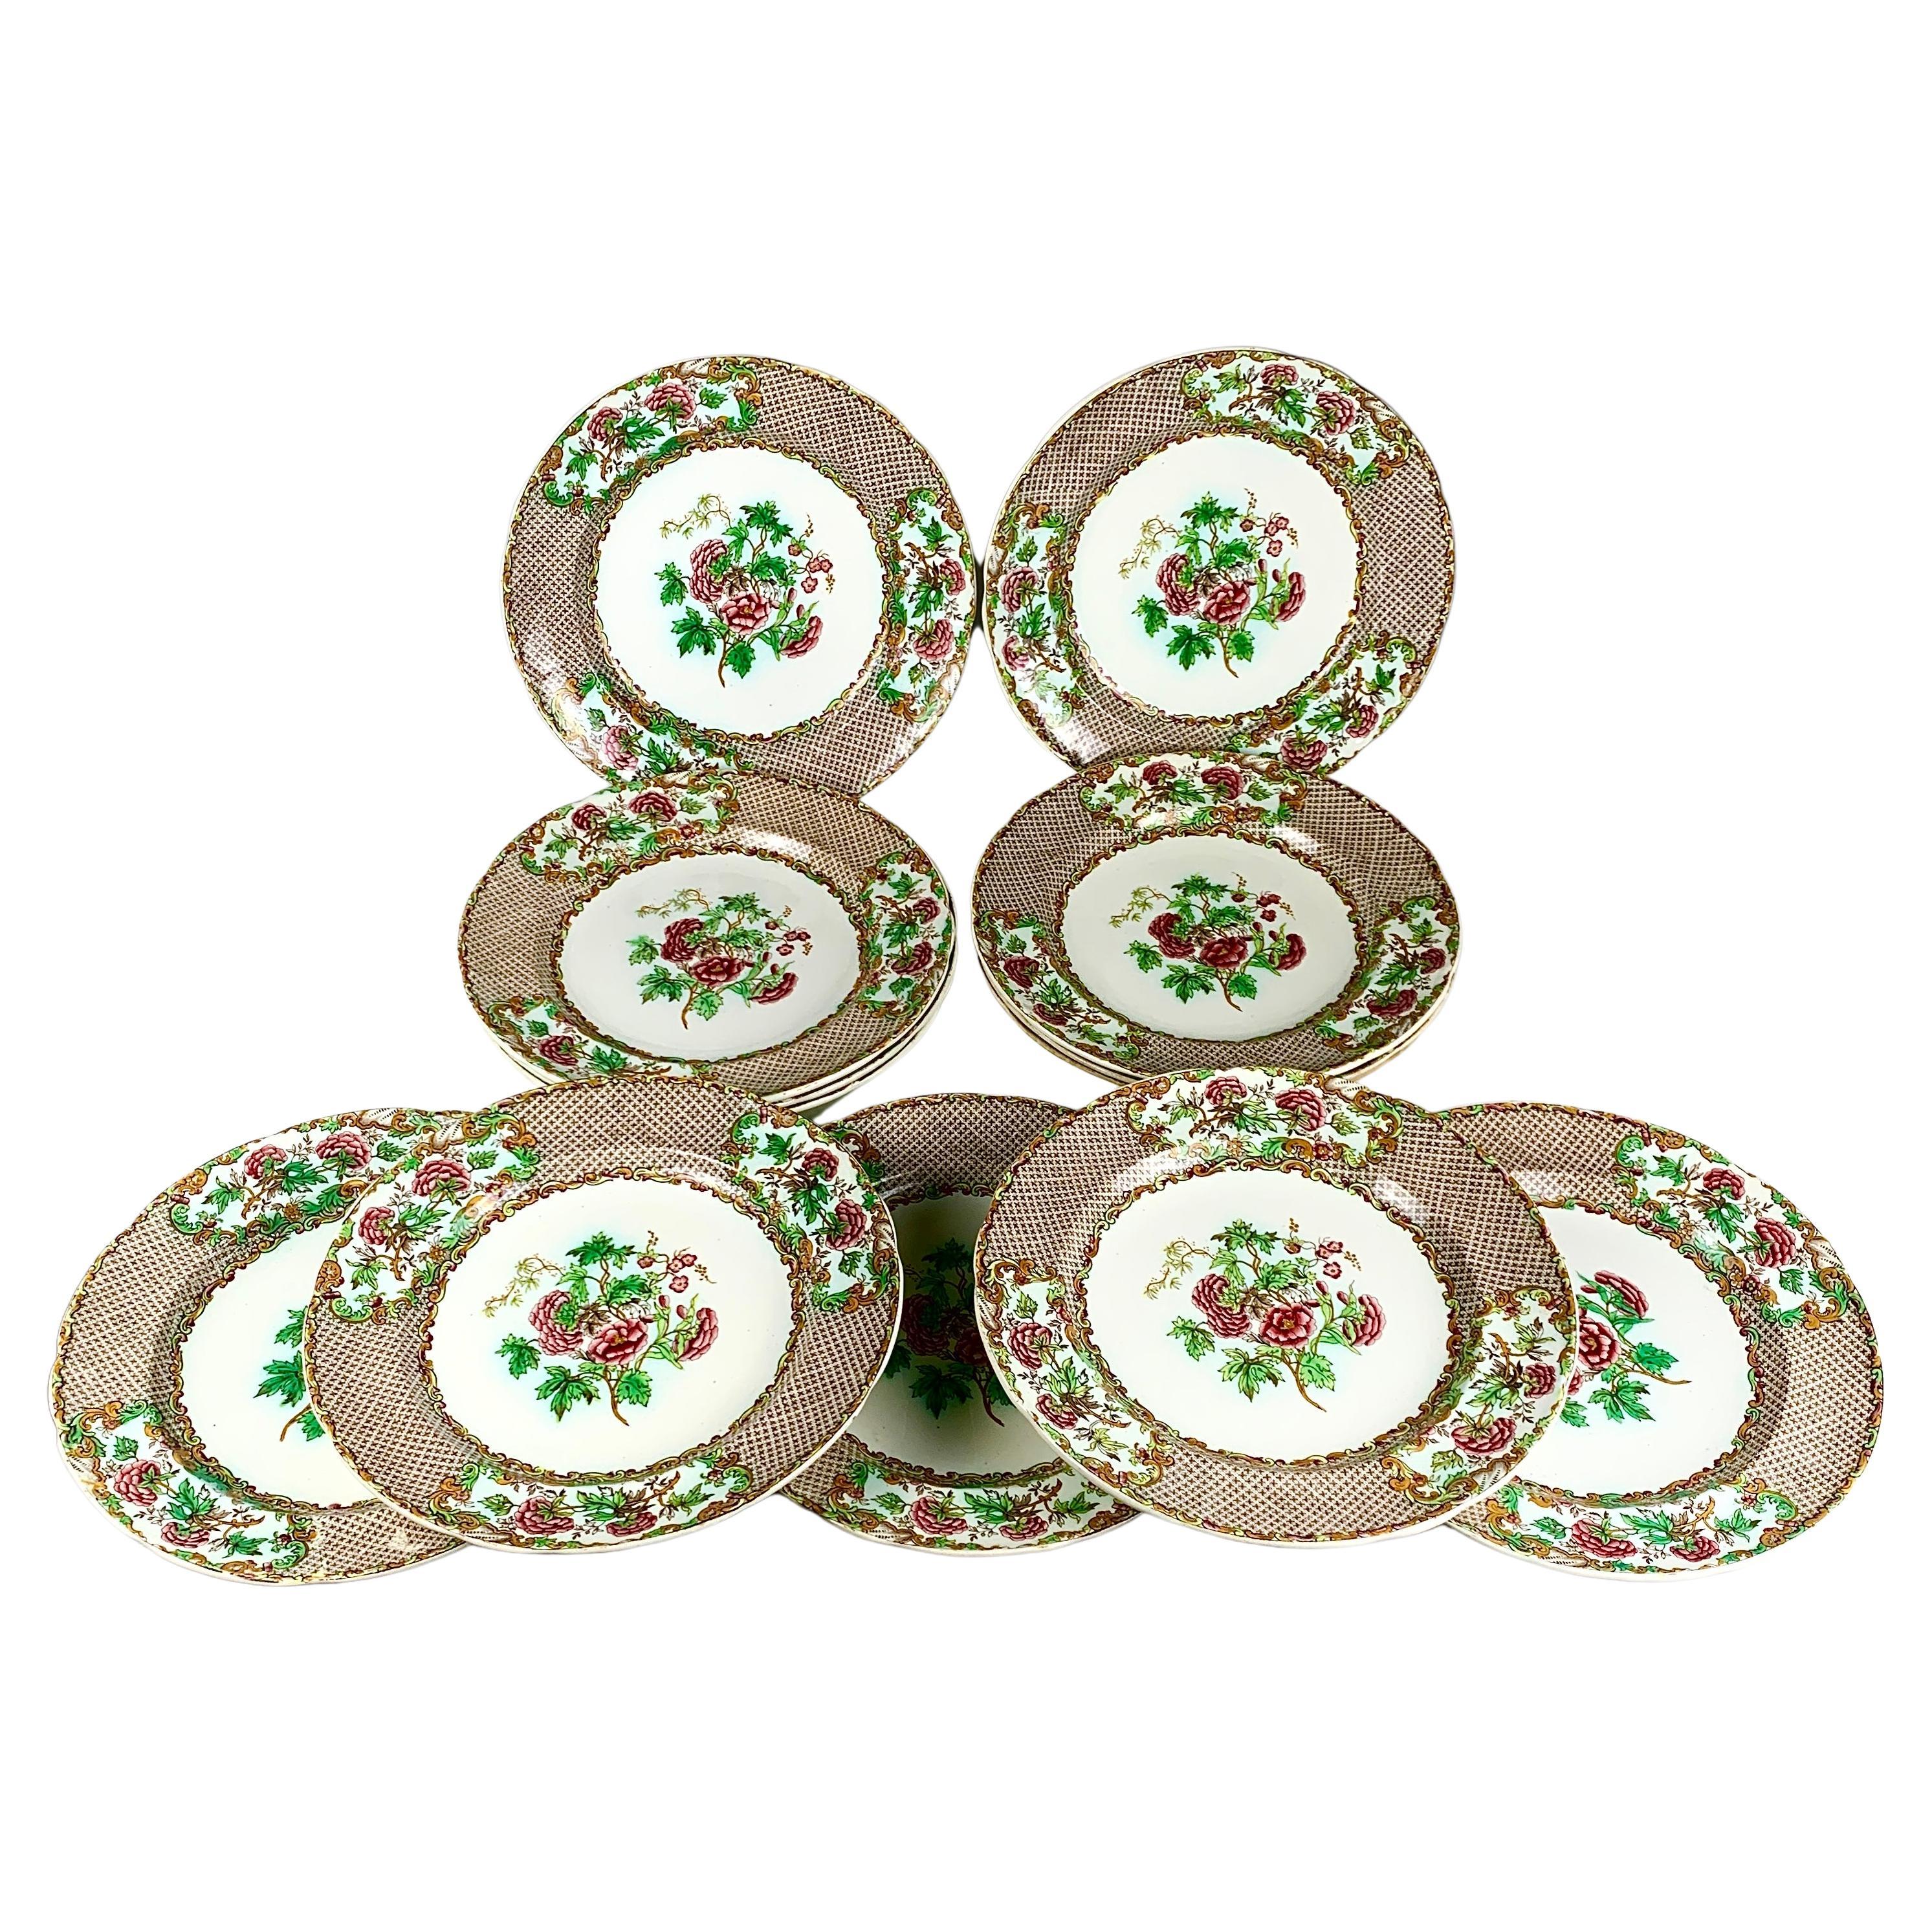 Douzaine d'assiettes plates Spode anciennes avec bordure de roses et de feuilles vertes C-1837